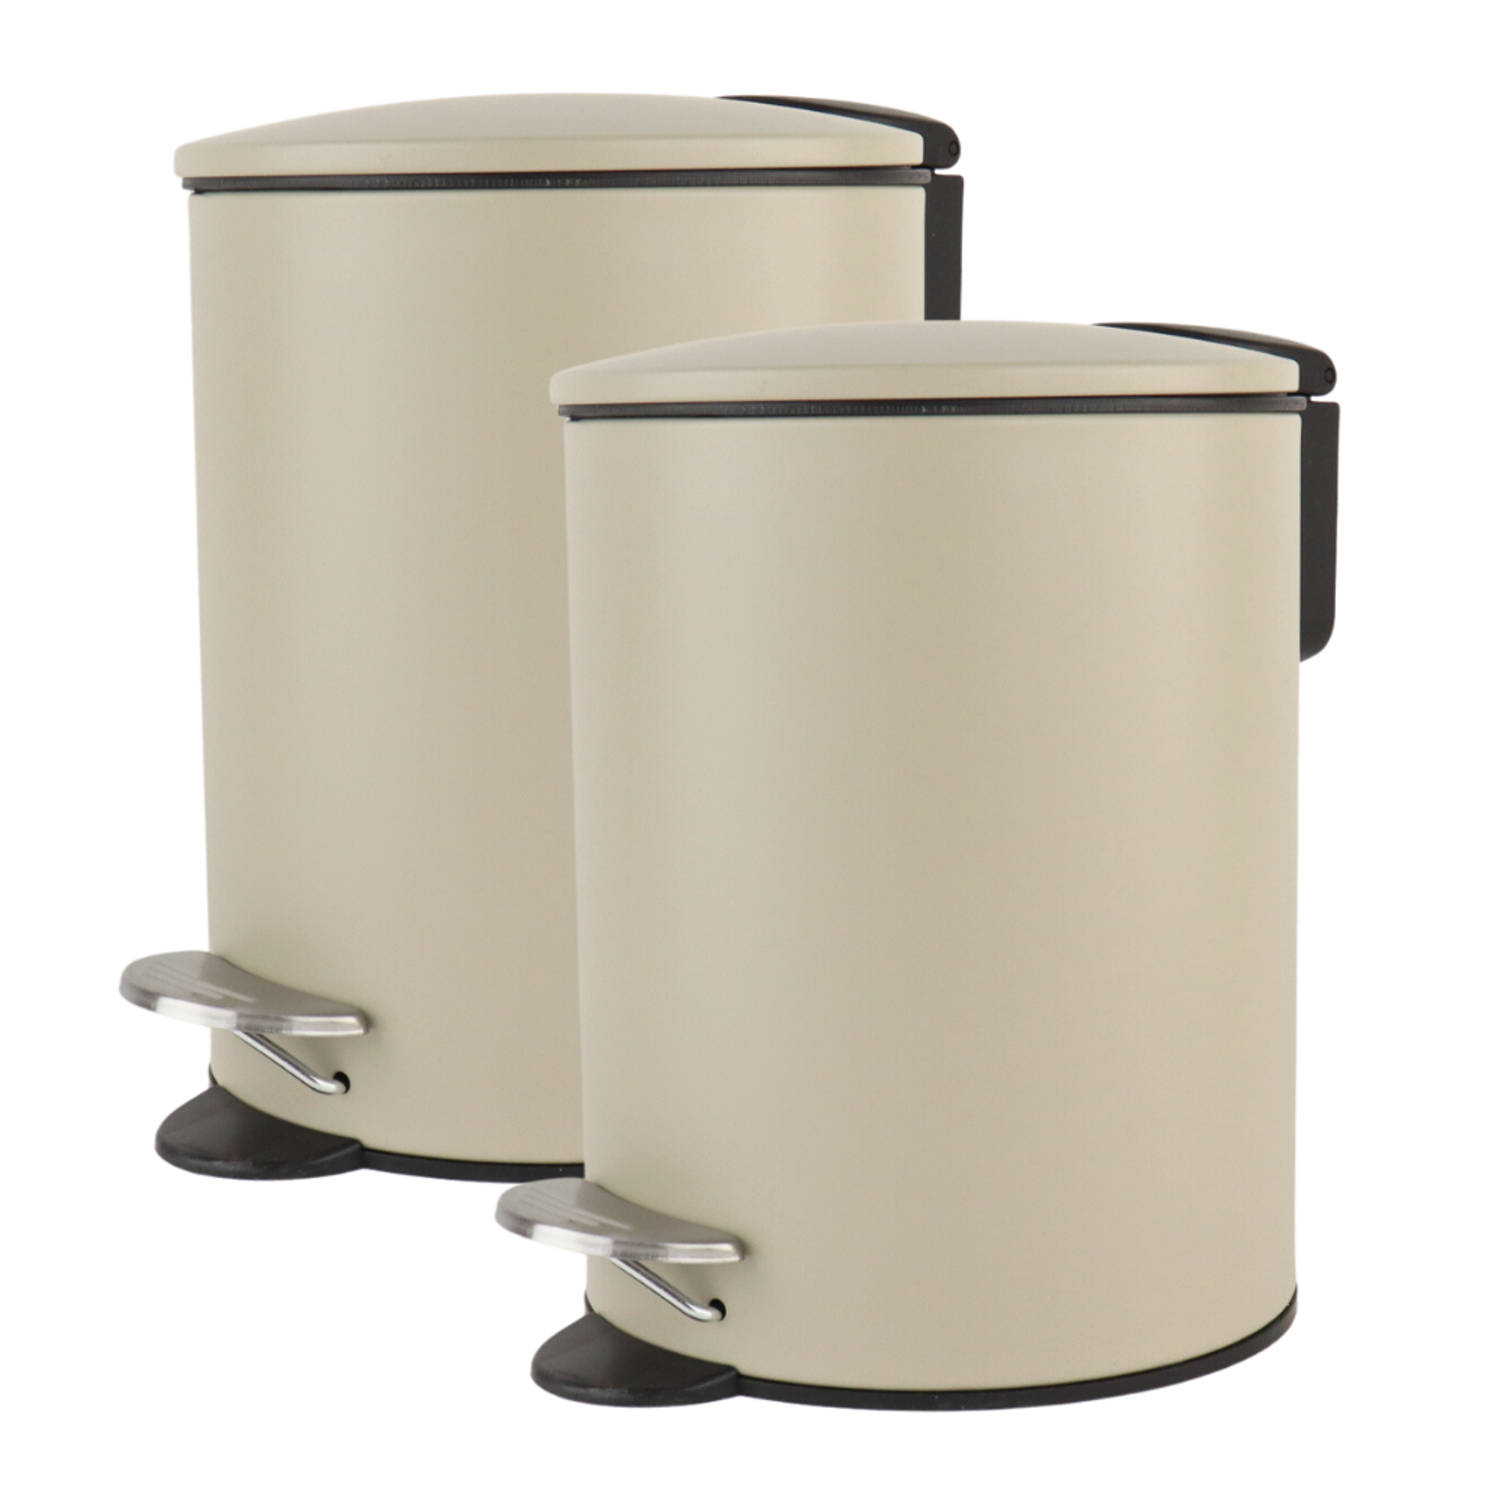 Nordix Pedaalemmer - 3 Liter - 2 stuks - Badkamer - Toilet - Beige - Metaal